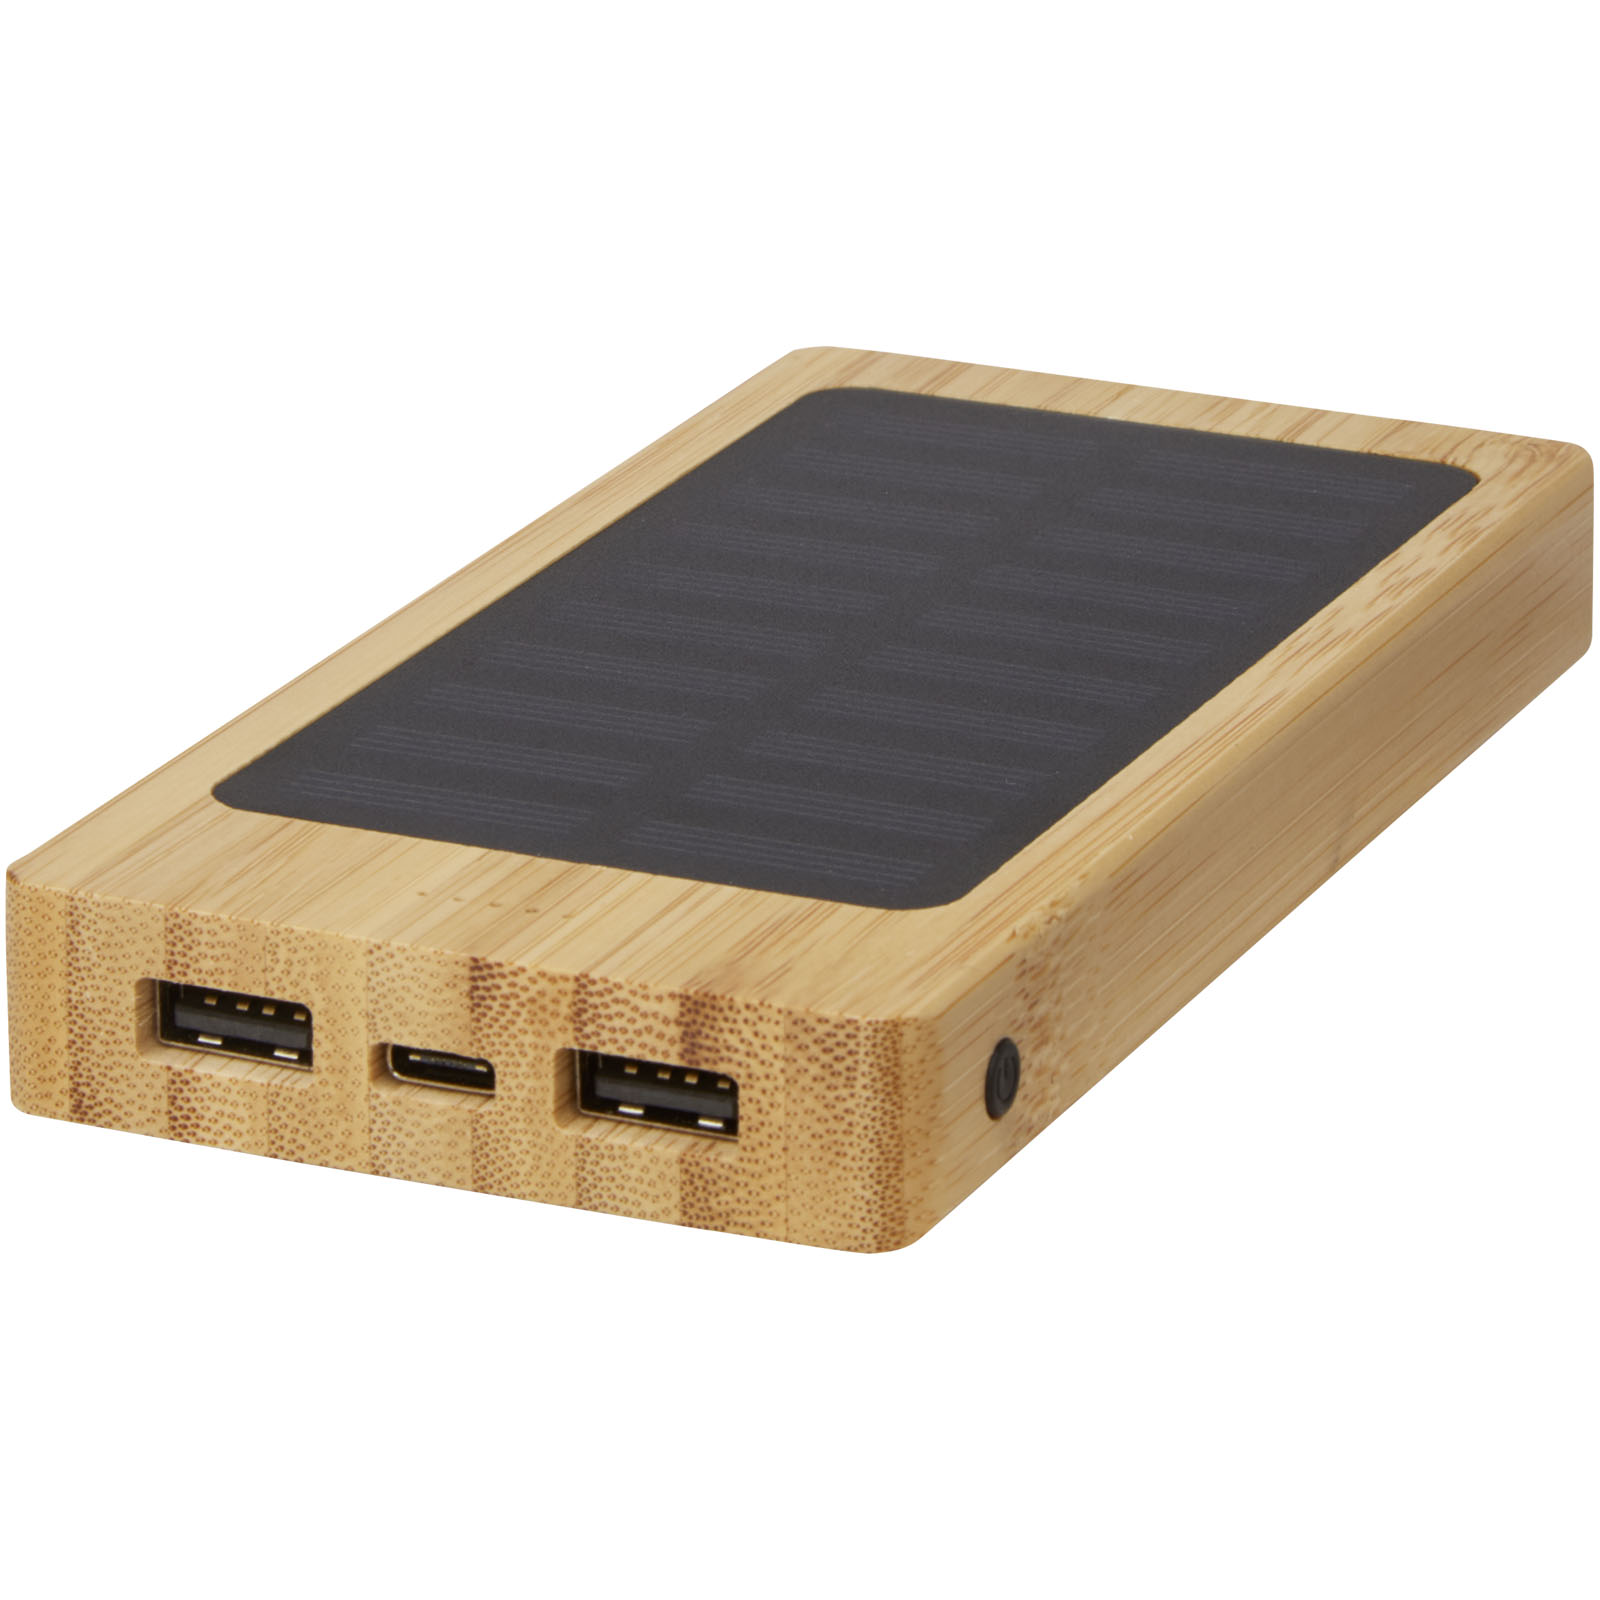 Banco de energía solar de bambú de 8000mAh con salida USB dual - Pleitas